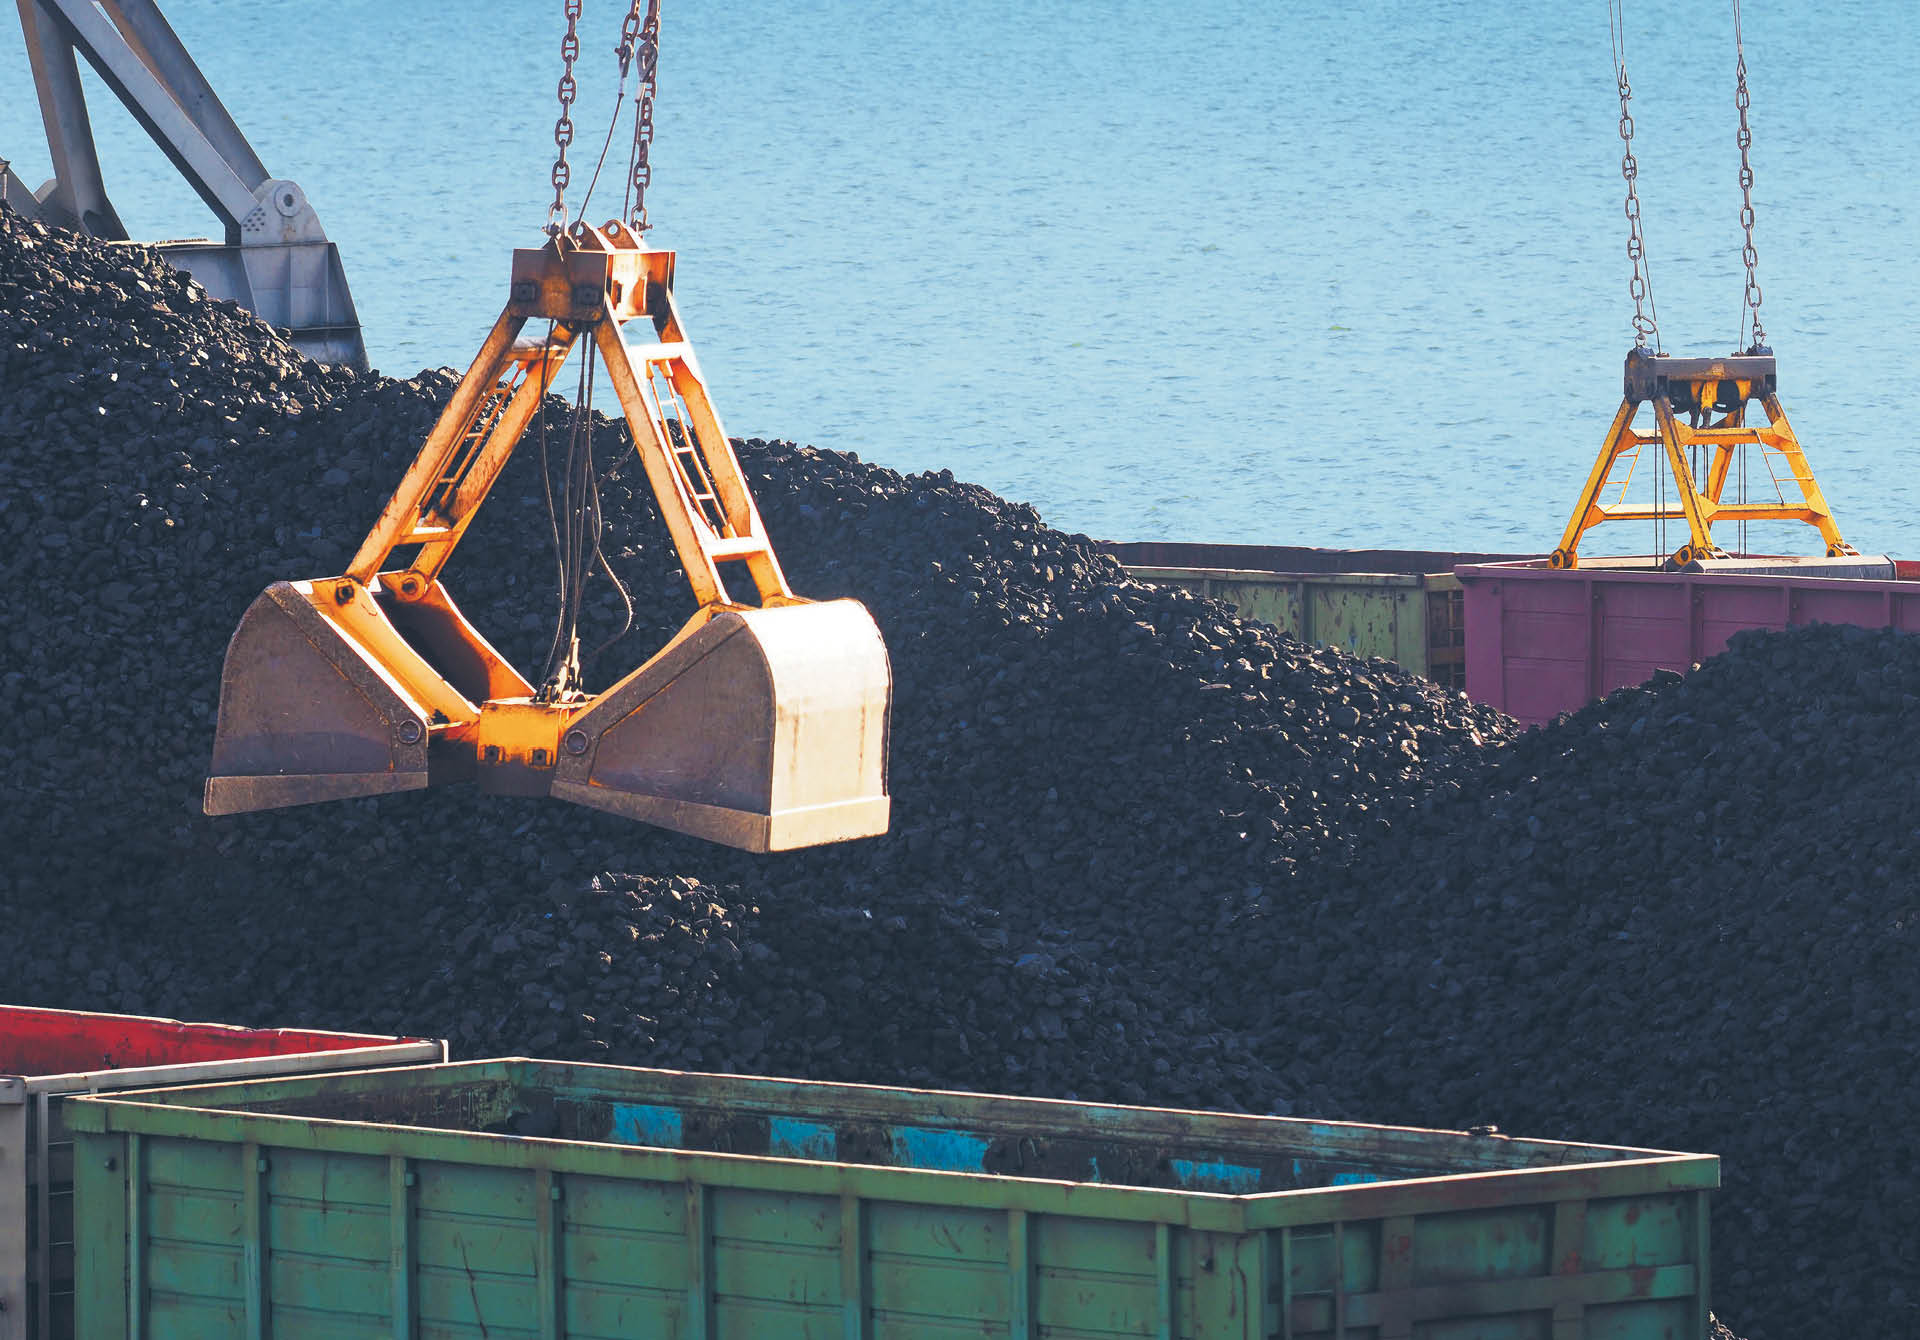 Resort rozpatruje import węgla przez porty zagraniczne, a nawet zakup kopalń w Afryce